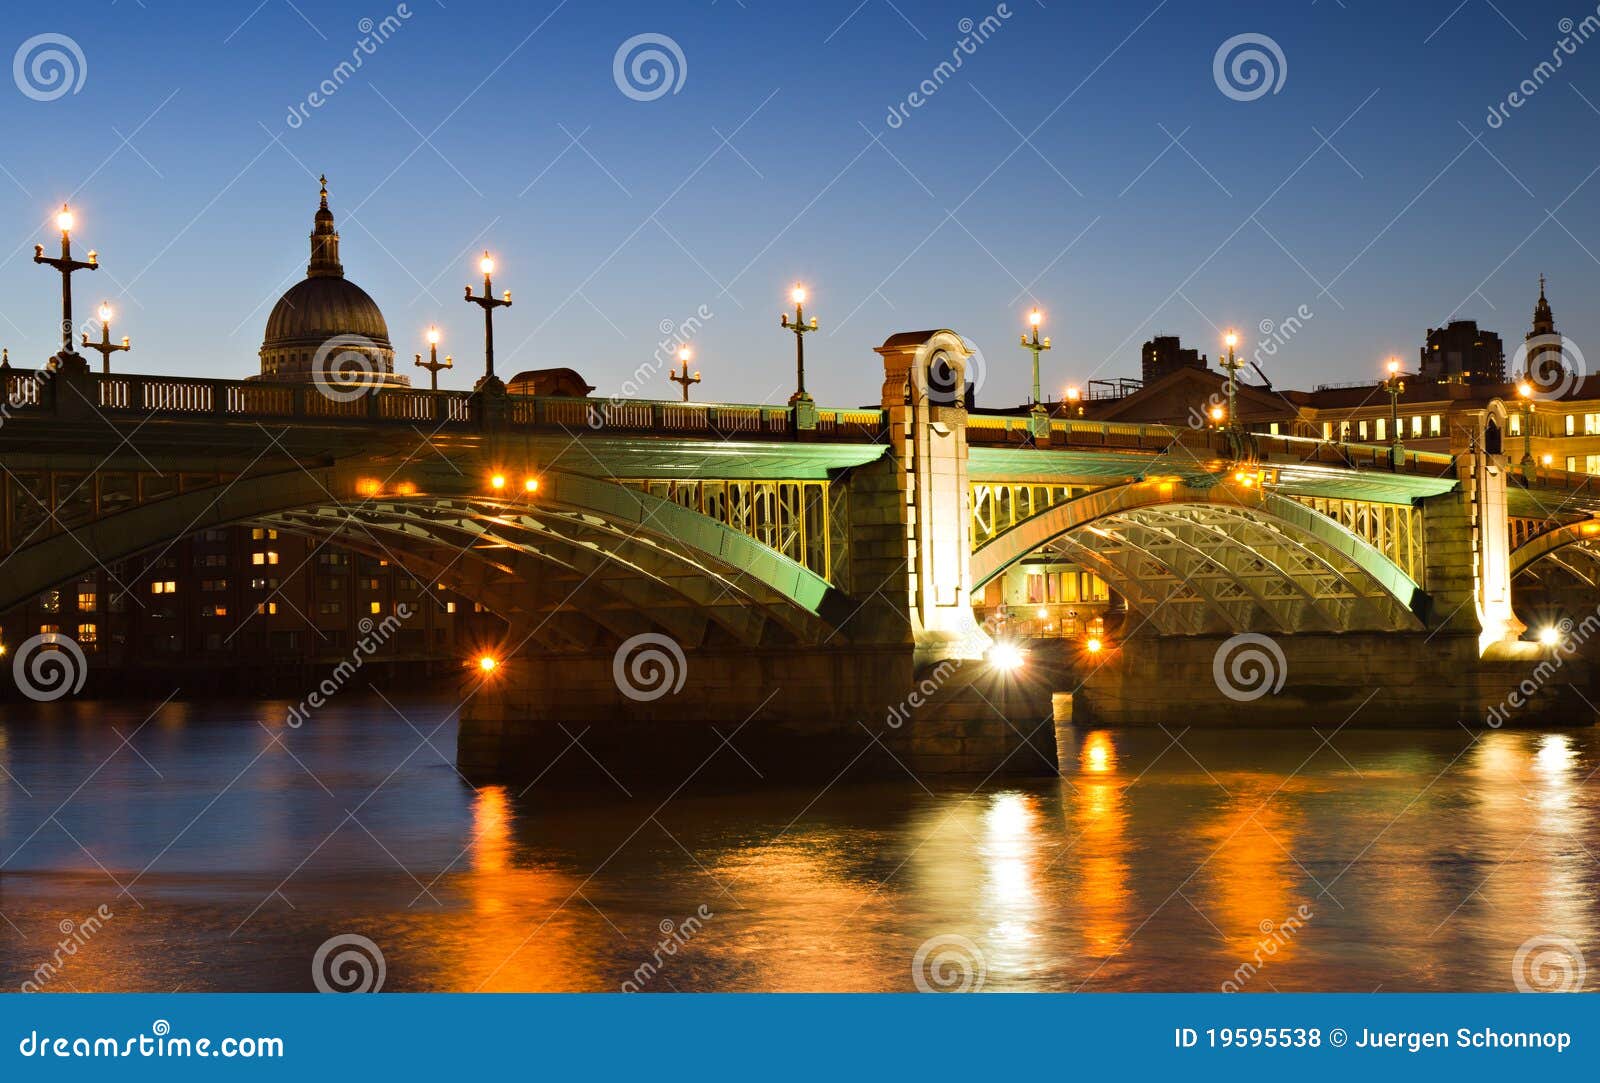 illuminated southwark bridge